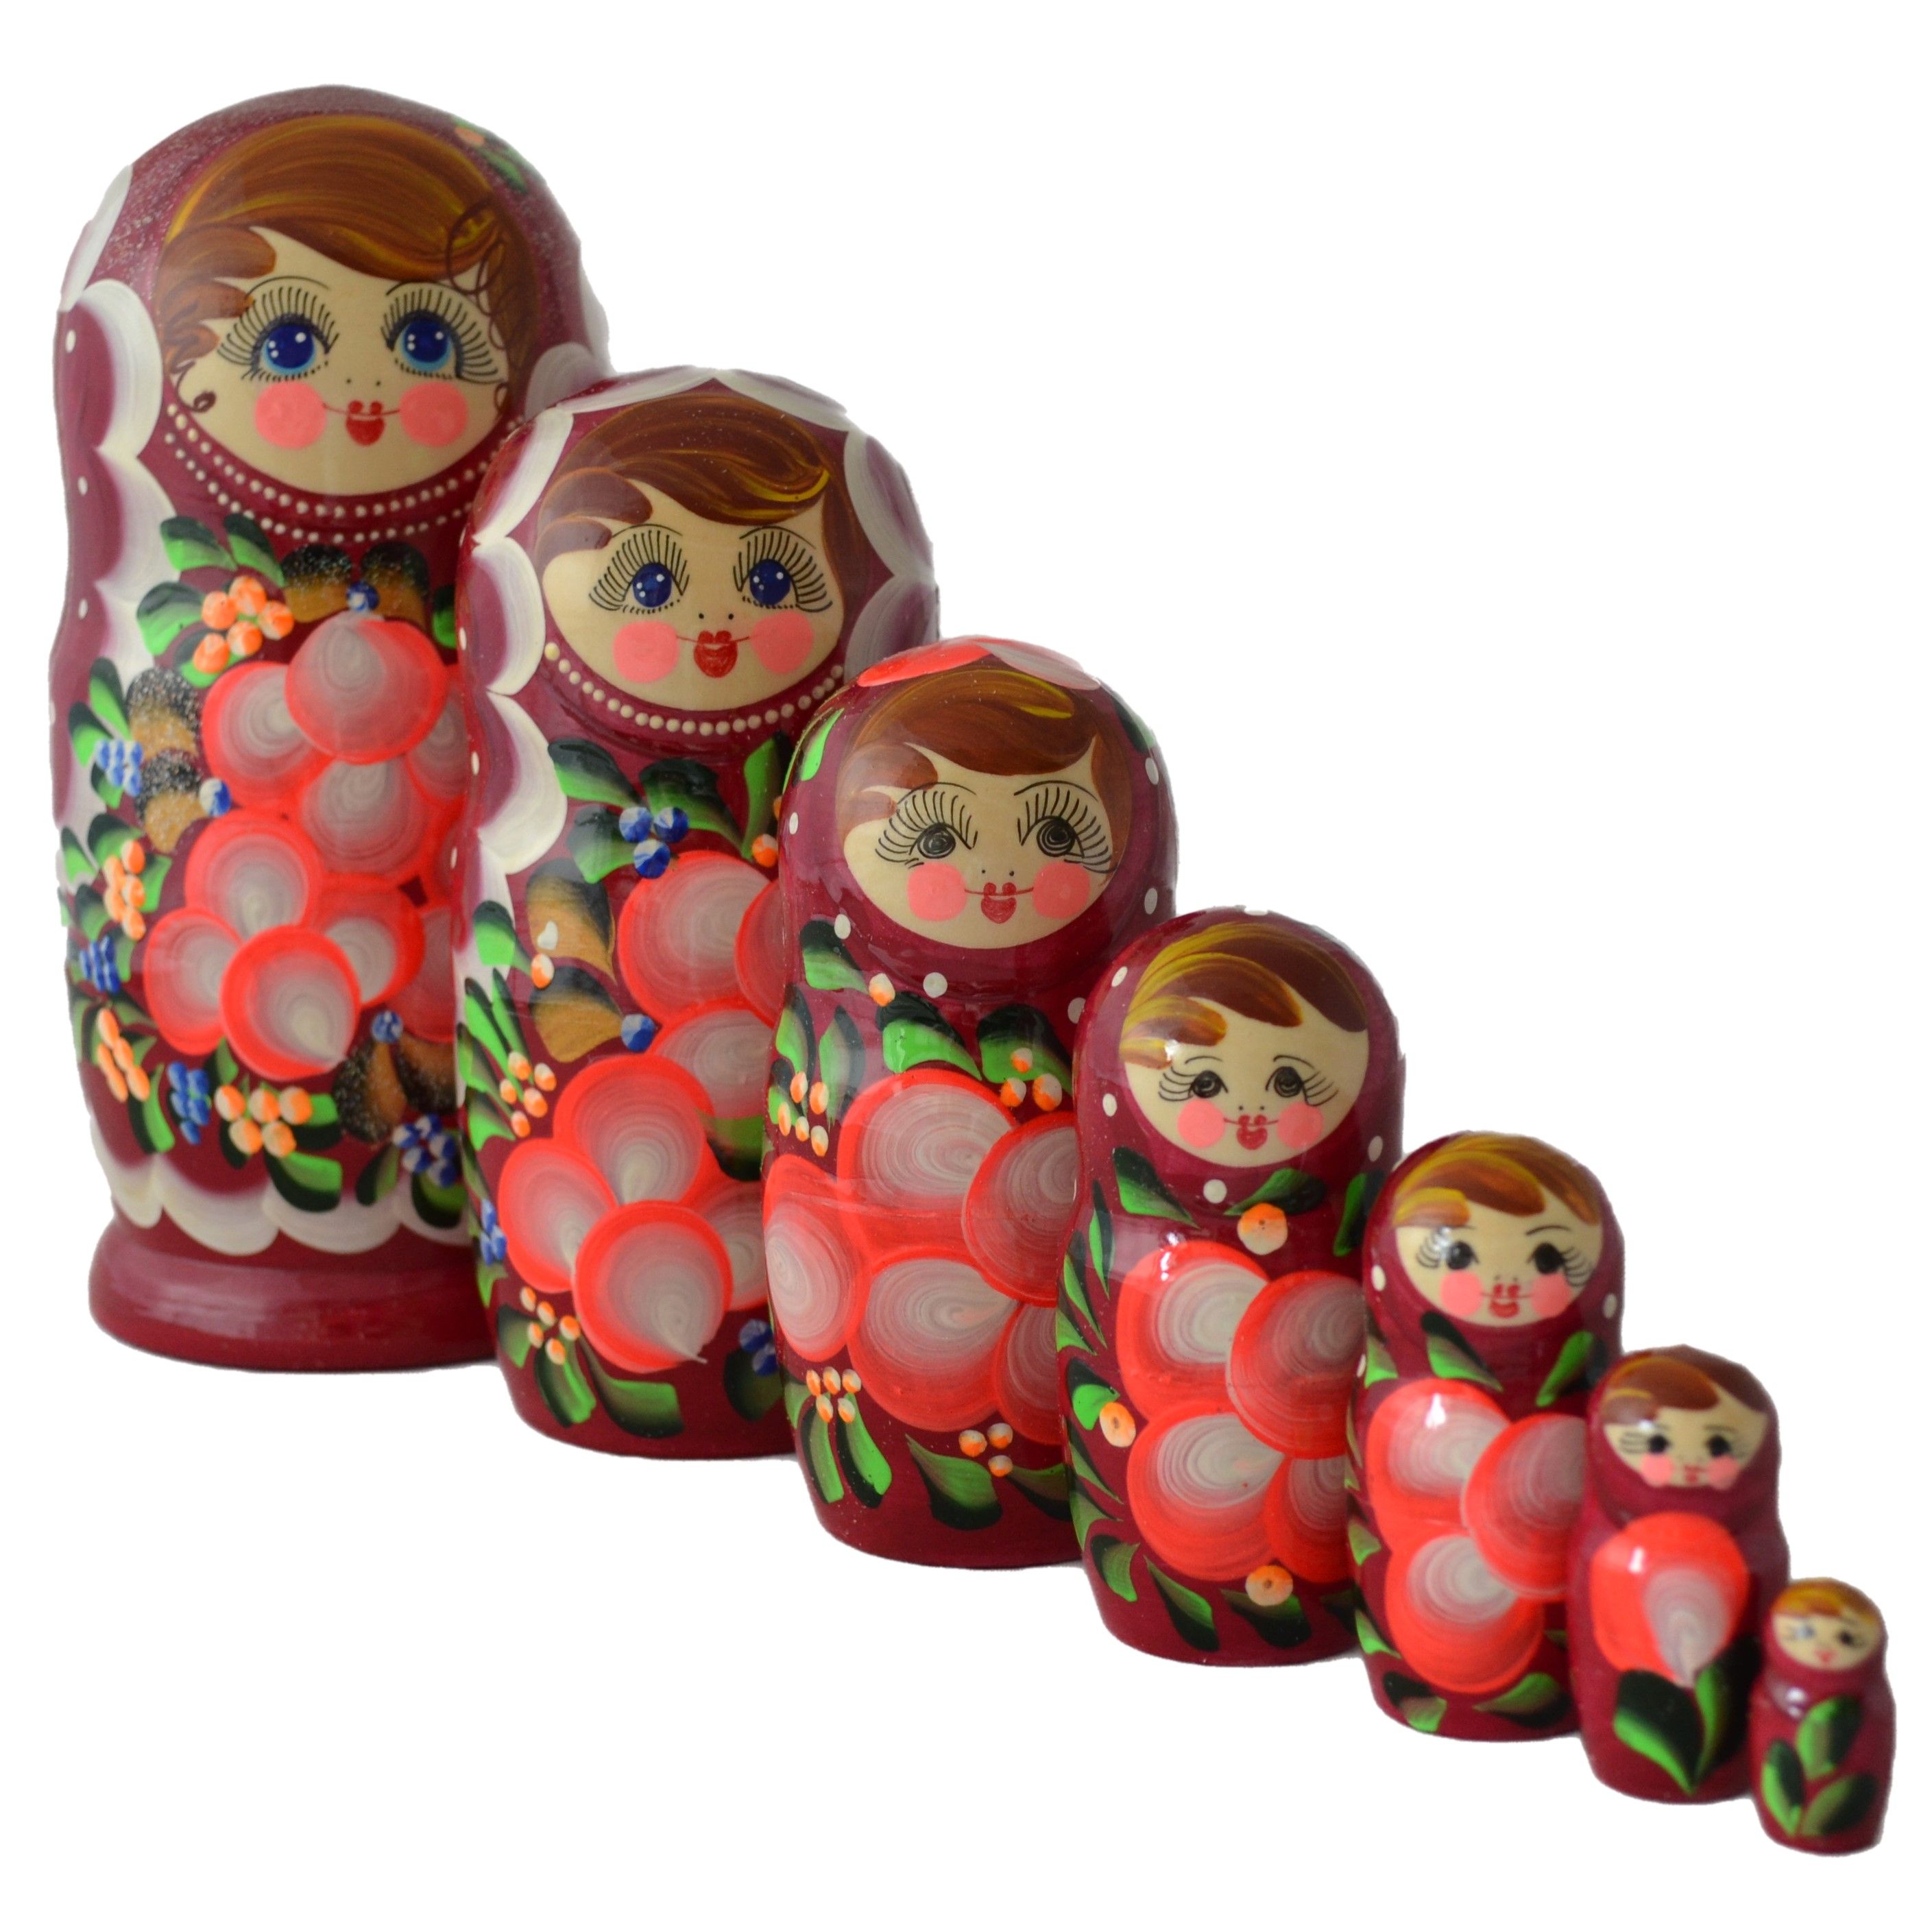 Lusha Matryoshka Doll